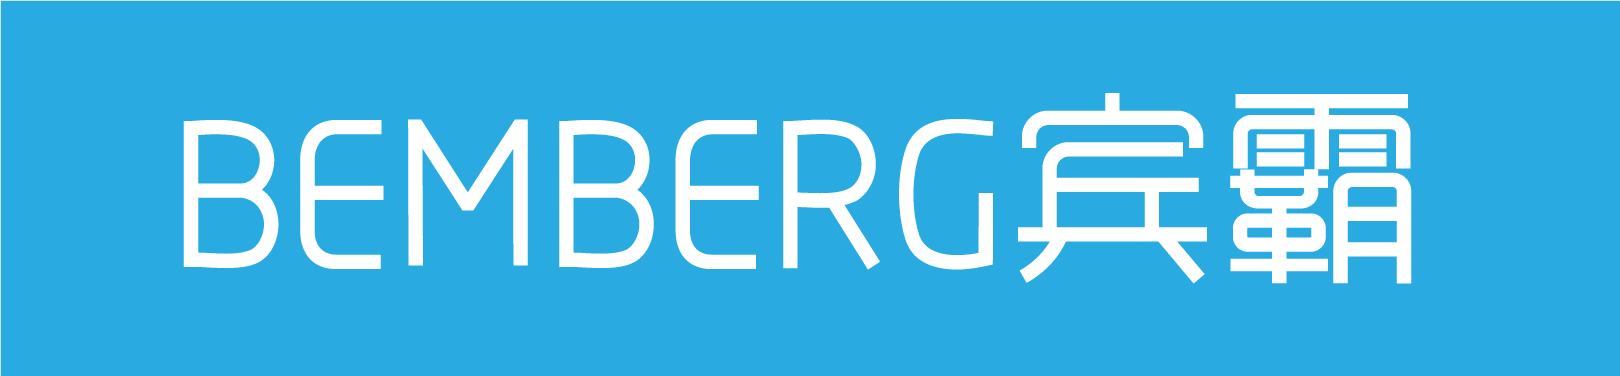 BEMBERG-йeАд